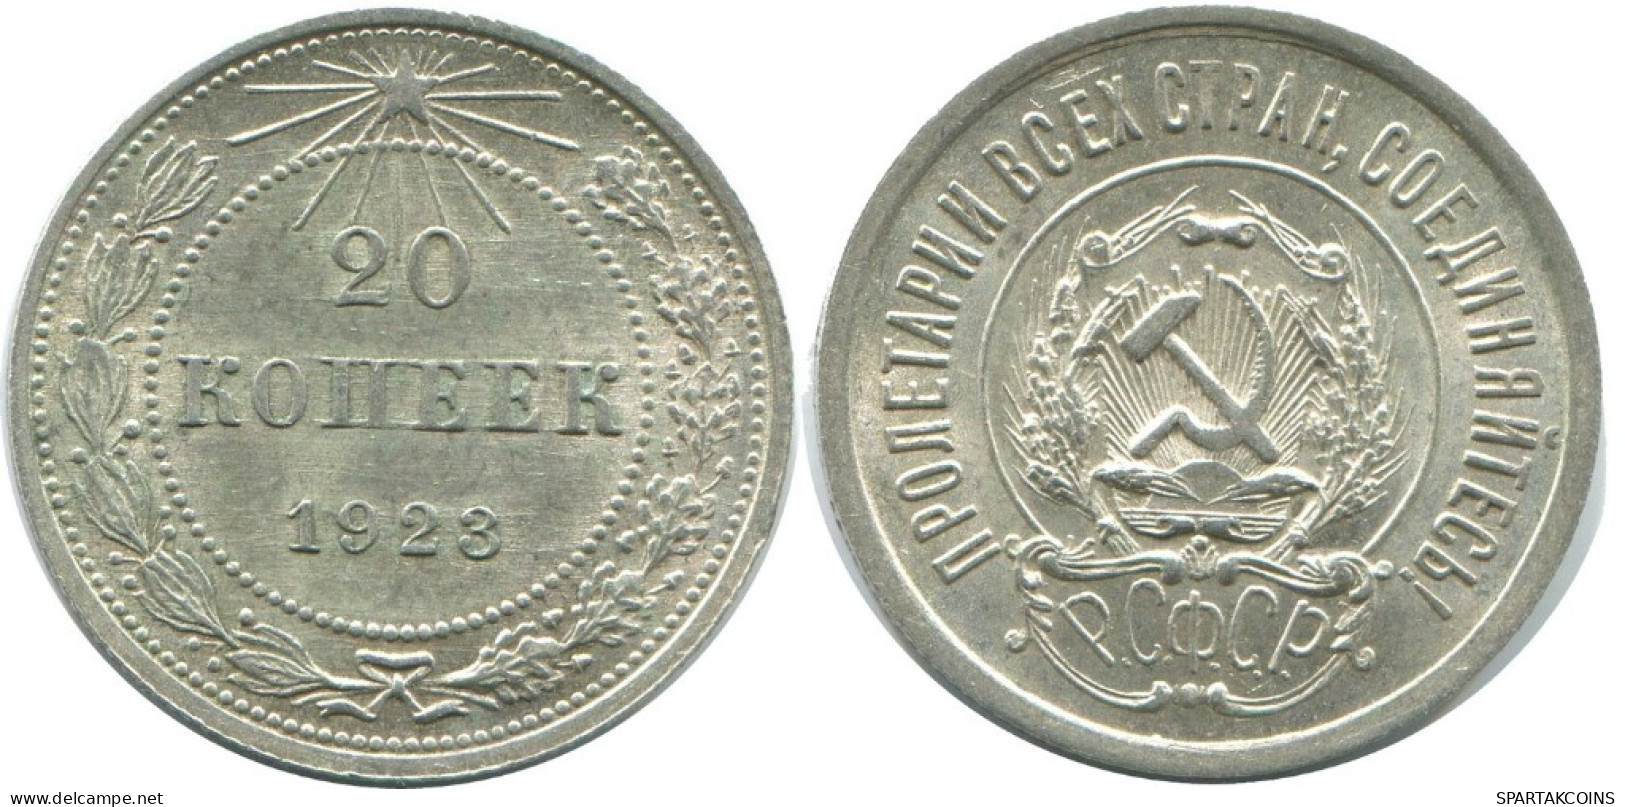 20 KOPEKS 1923 RUSSLAND RUSSIA RSFSR SILBER Münze HIGH GRADE #AF687.D.A - Russia